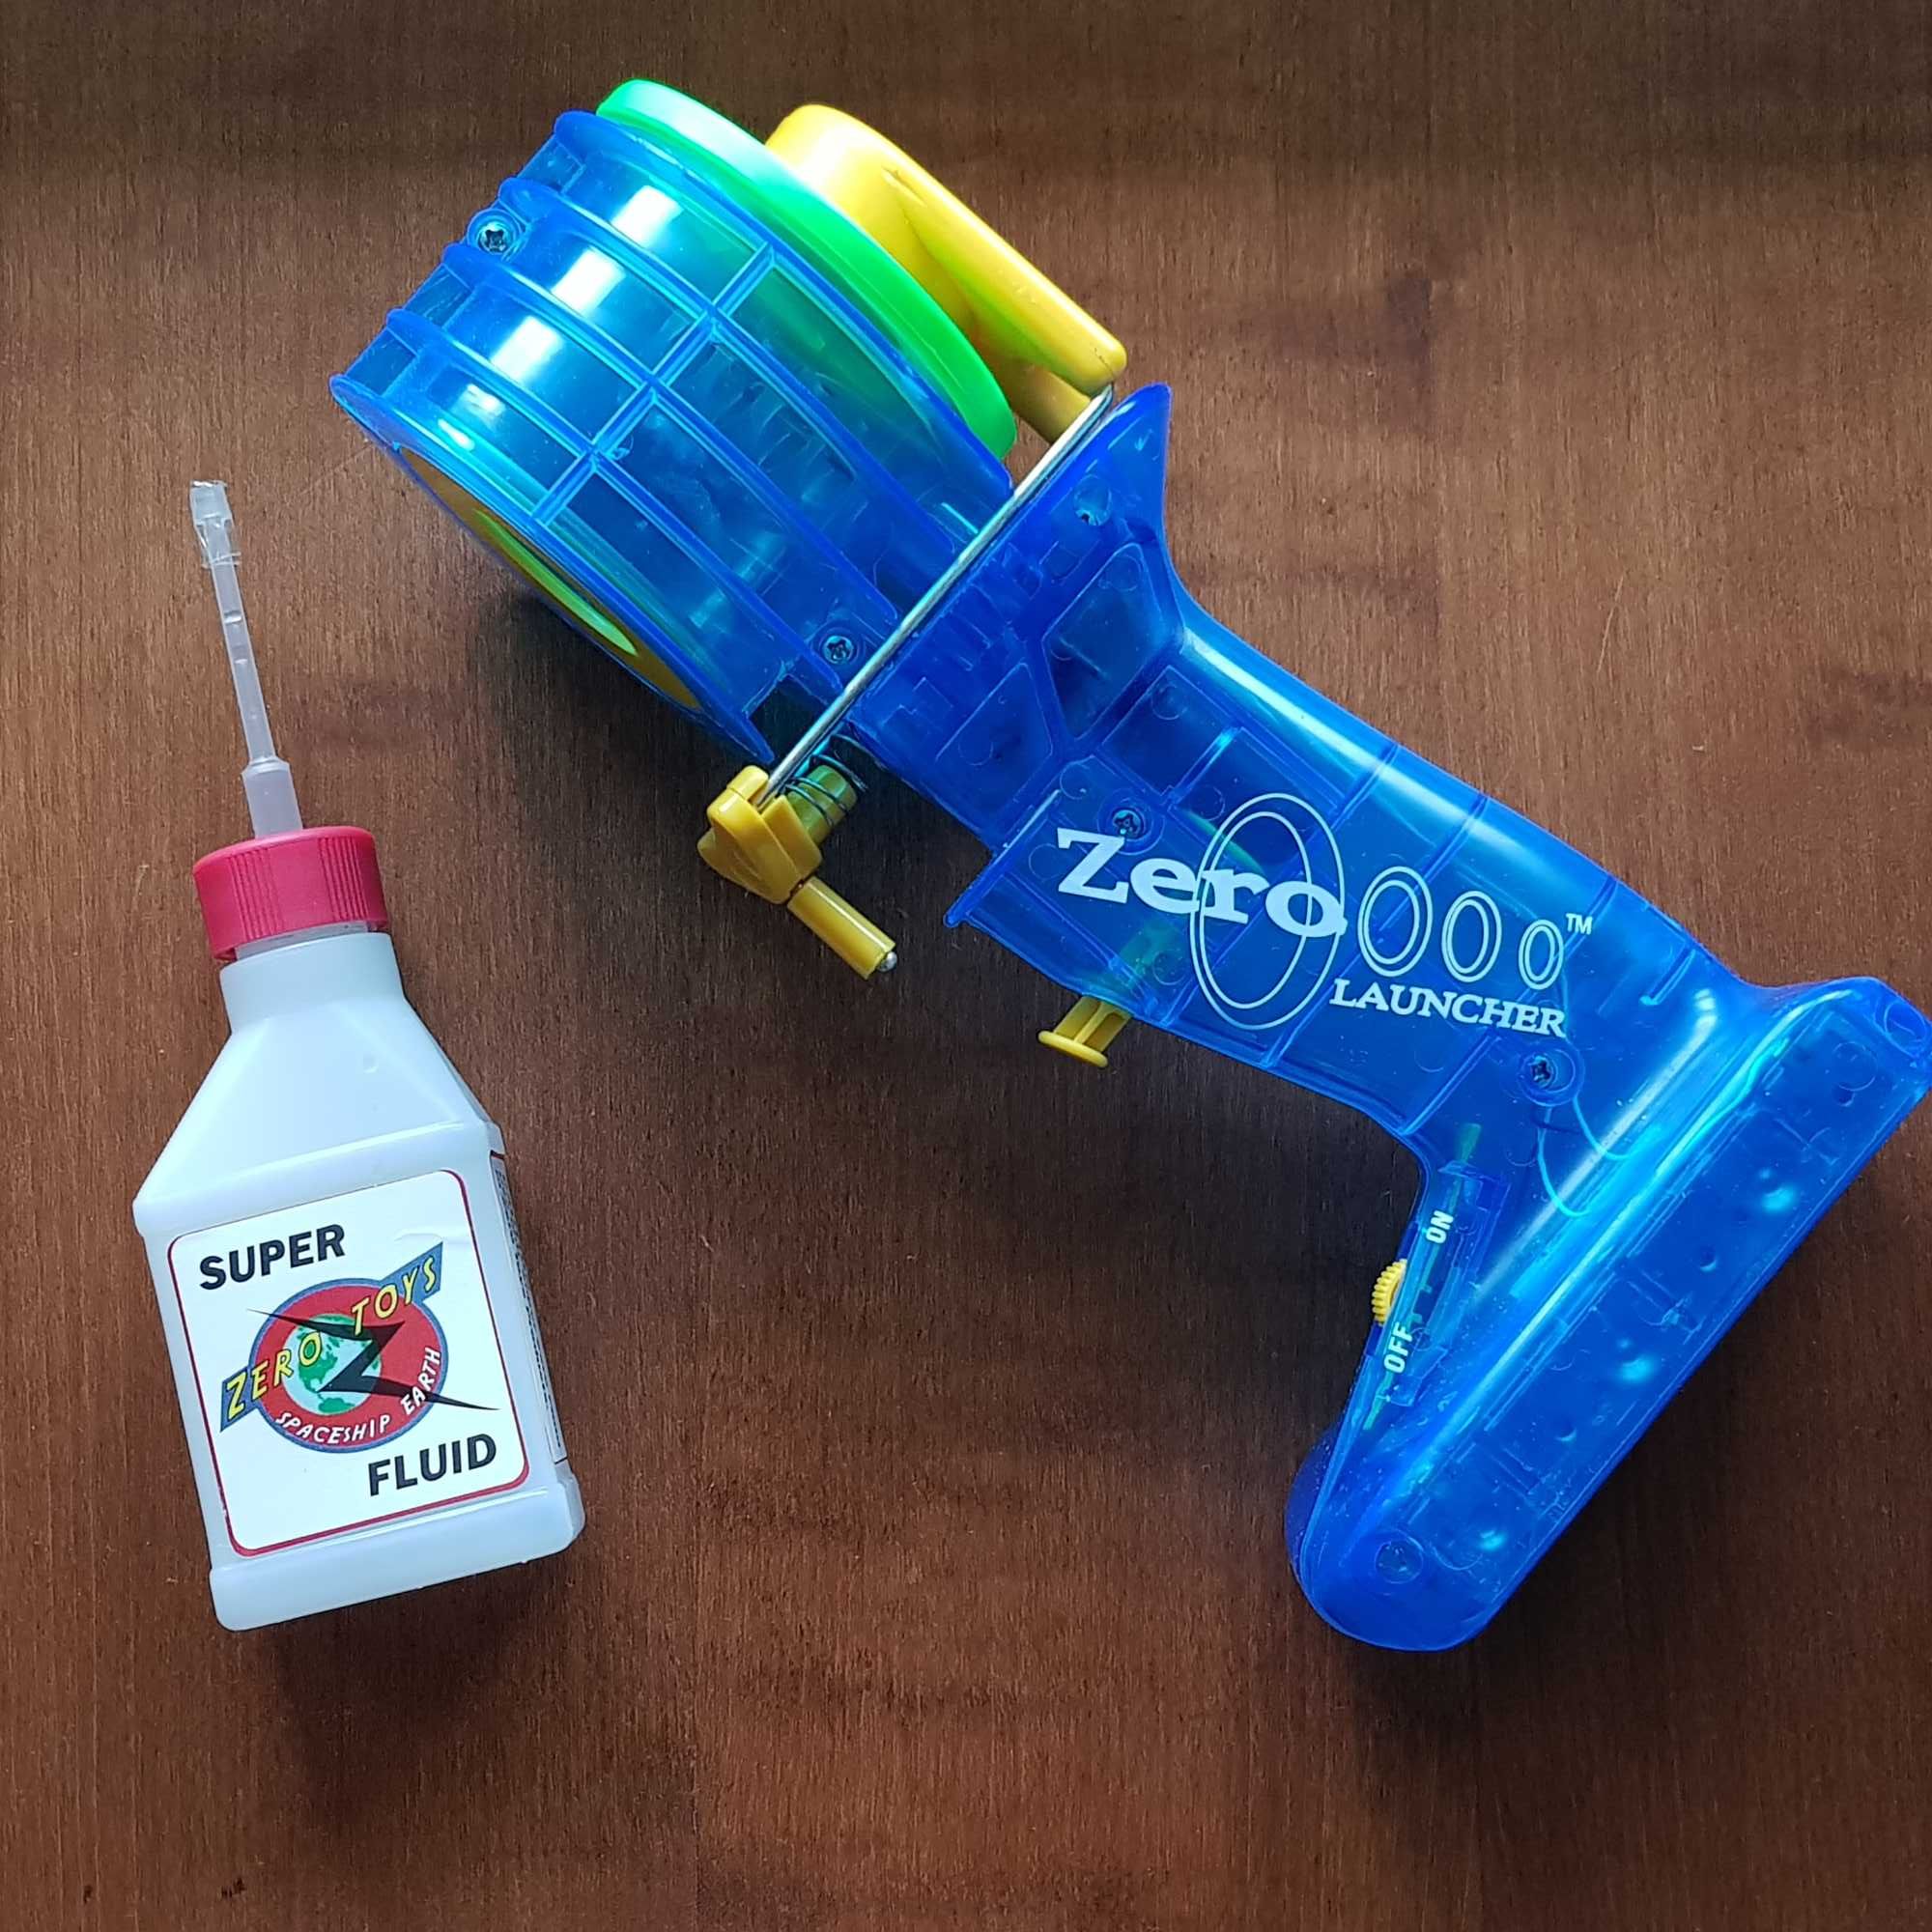 Zero launcher игрушка пистолет мини генератор дыма